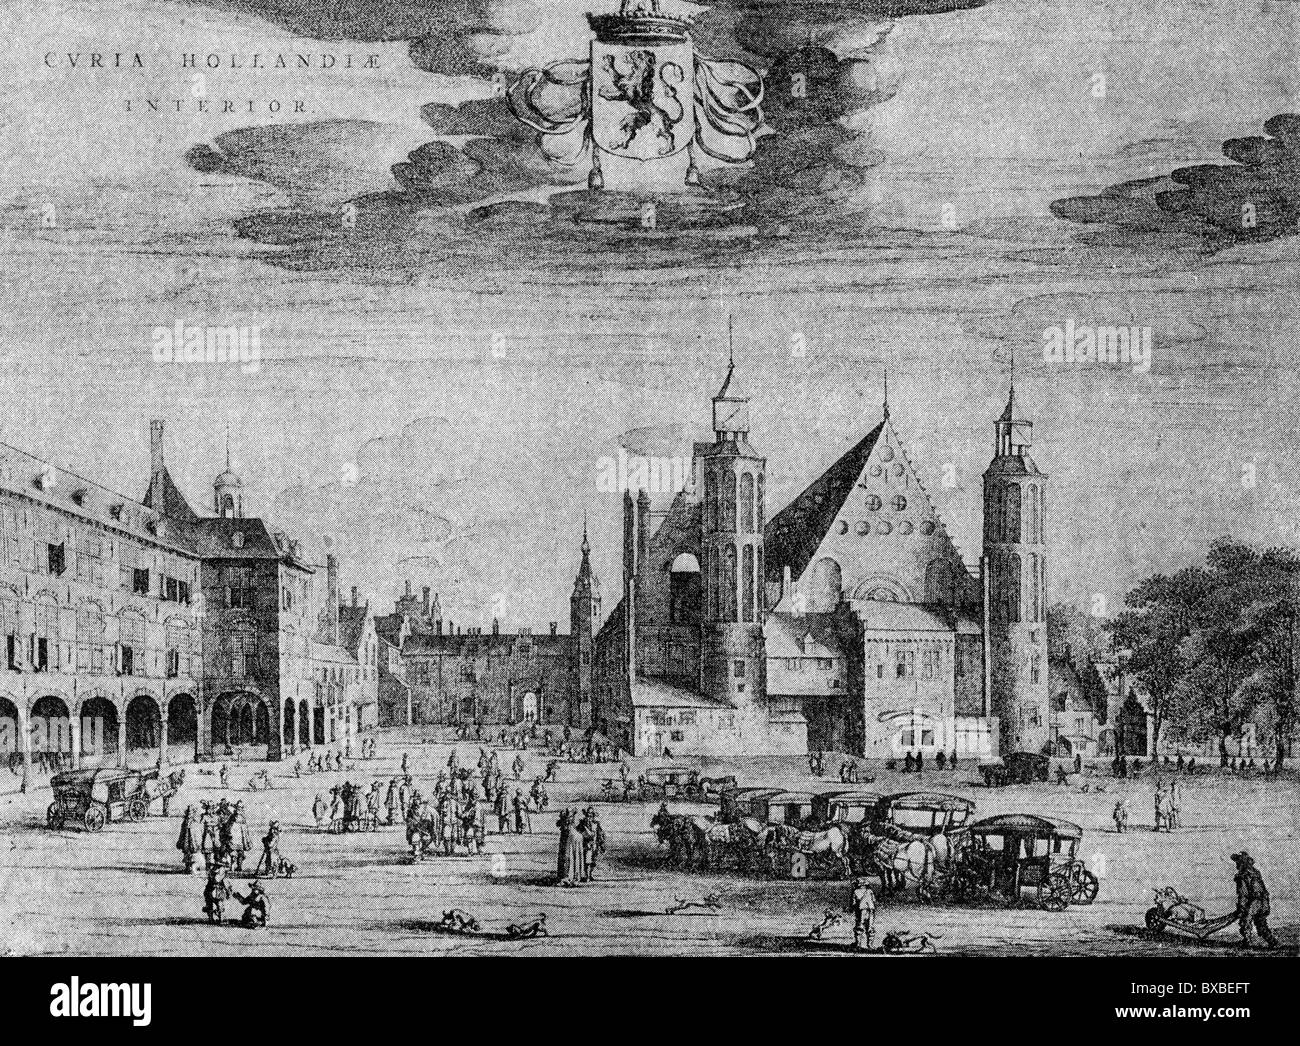 La cour du palais à La Haye, Pays-Bas, vers 1690 ; noir et blanc Illustration ; Banque D'Images